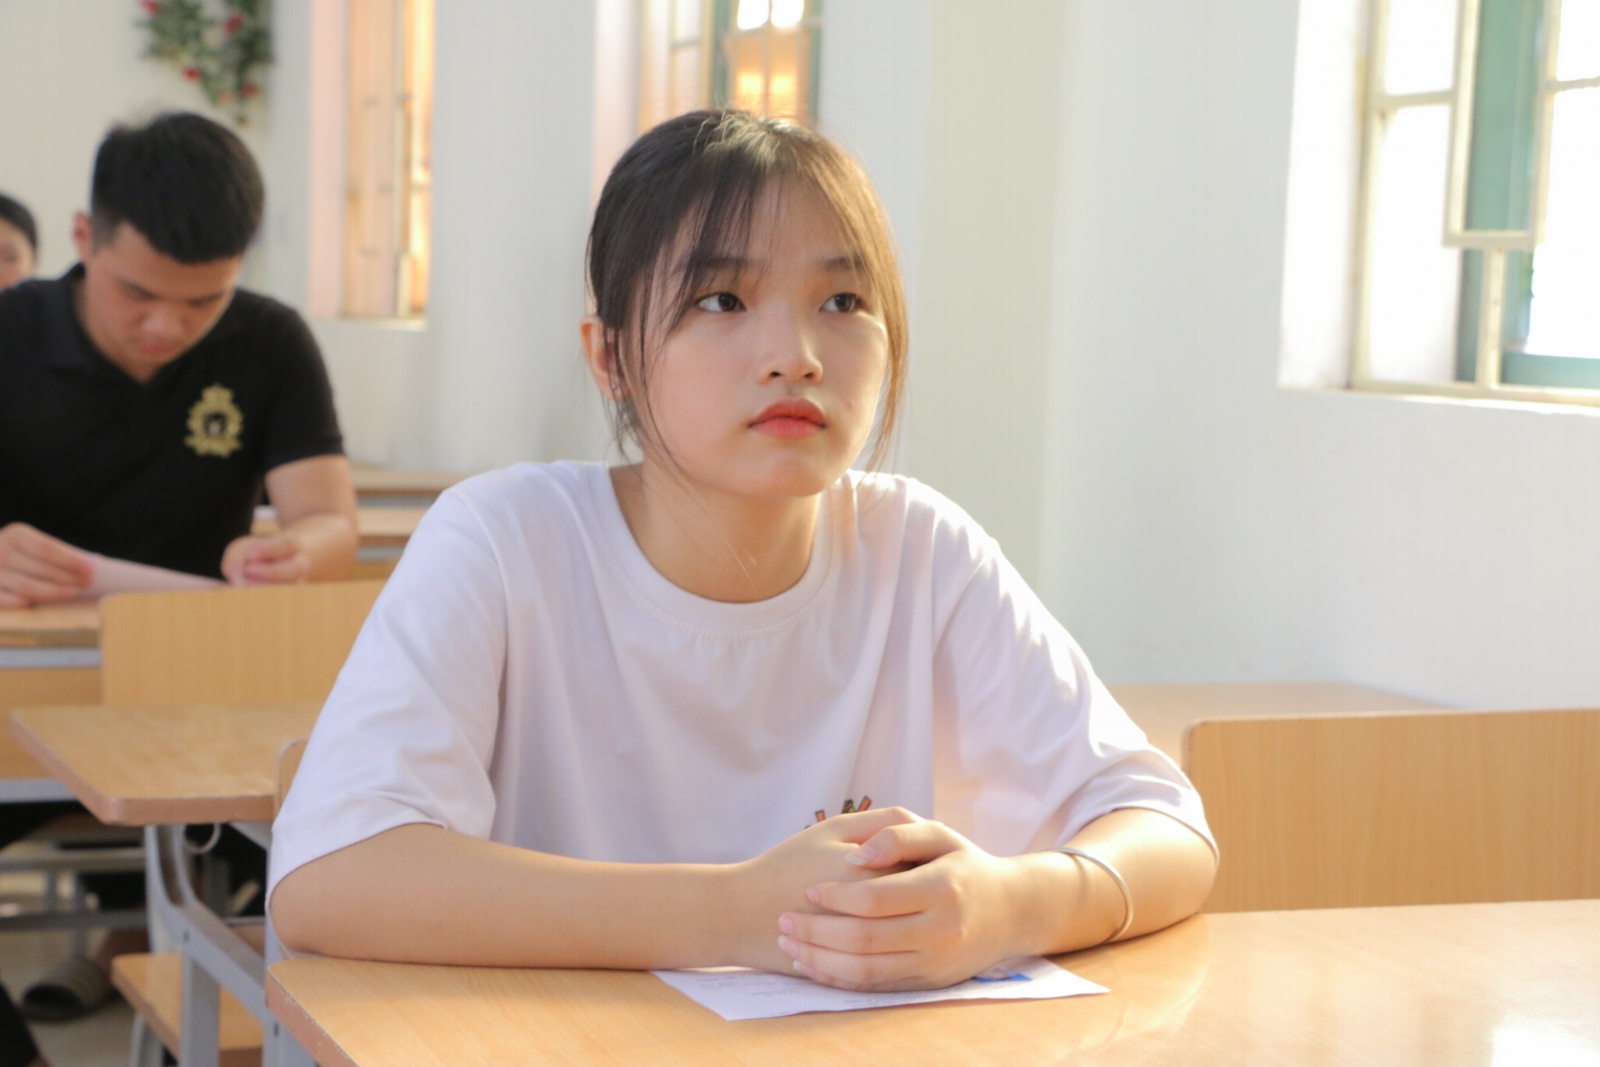 Hà Nội: Băn khoăn khi mở cửa trường học vì vướng tiêu chí về tiêm chủng - Ảnh minh hoạ 2